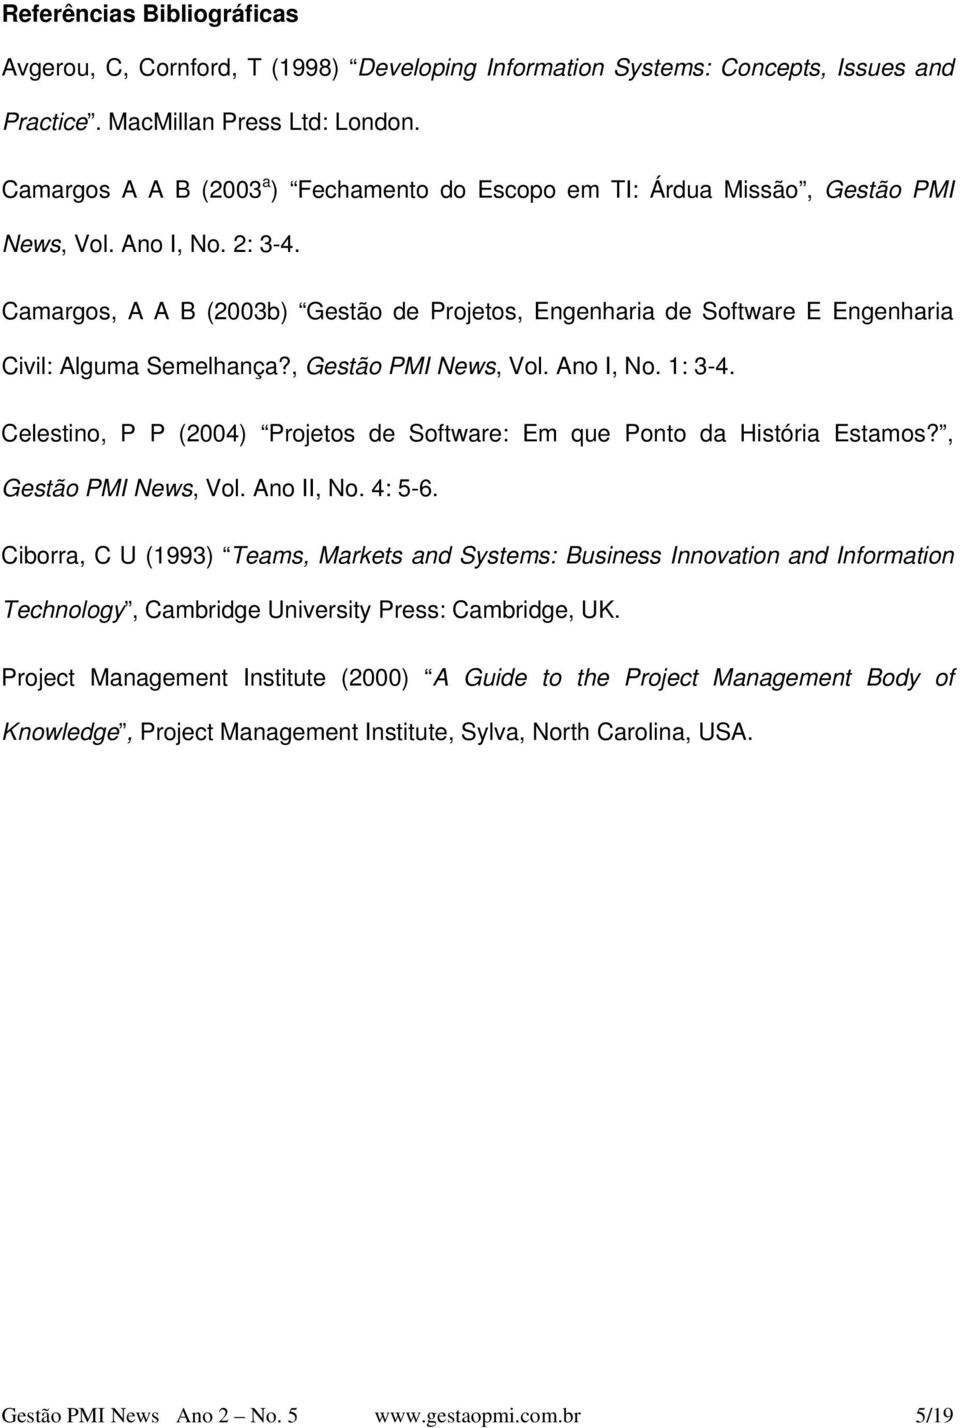 Camargos, A A B (2003b) Gestão de Projetos, Engenharia de Software E Engenharia Civil: Alguma Semelhança?, Gestão PMI News, Vol. Ano I, No. 1: 3-4.